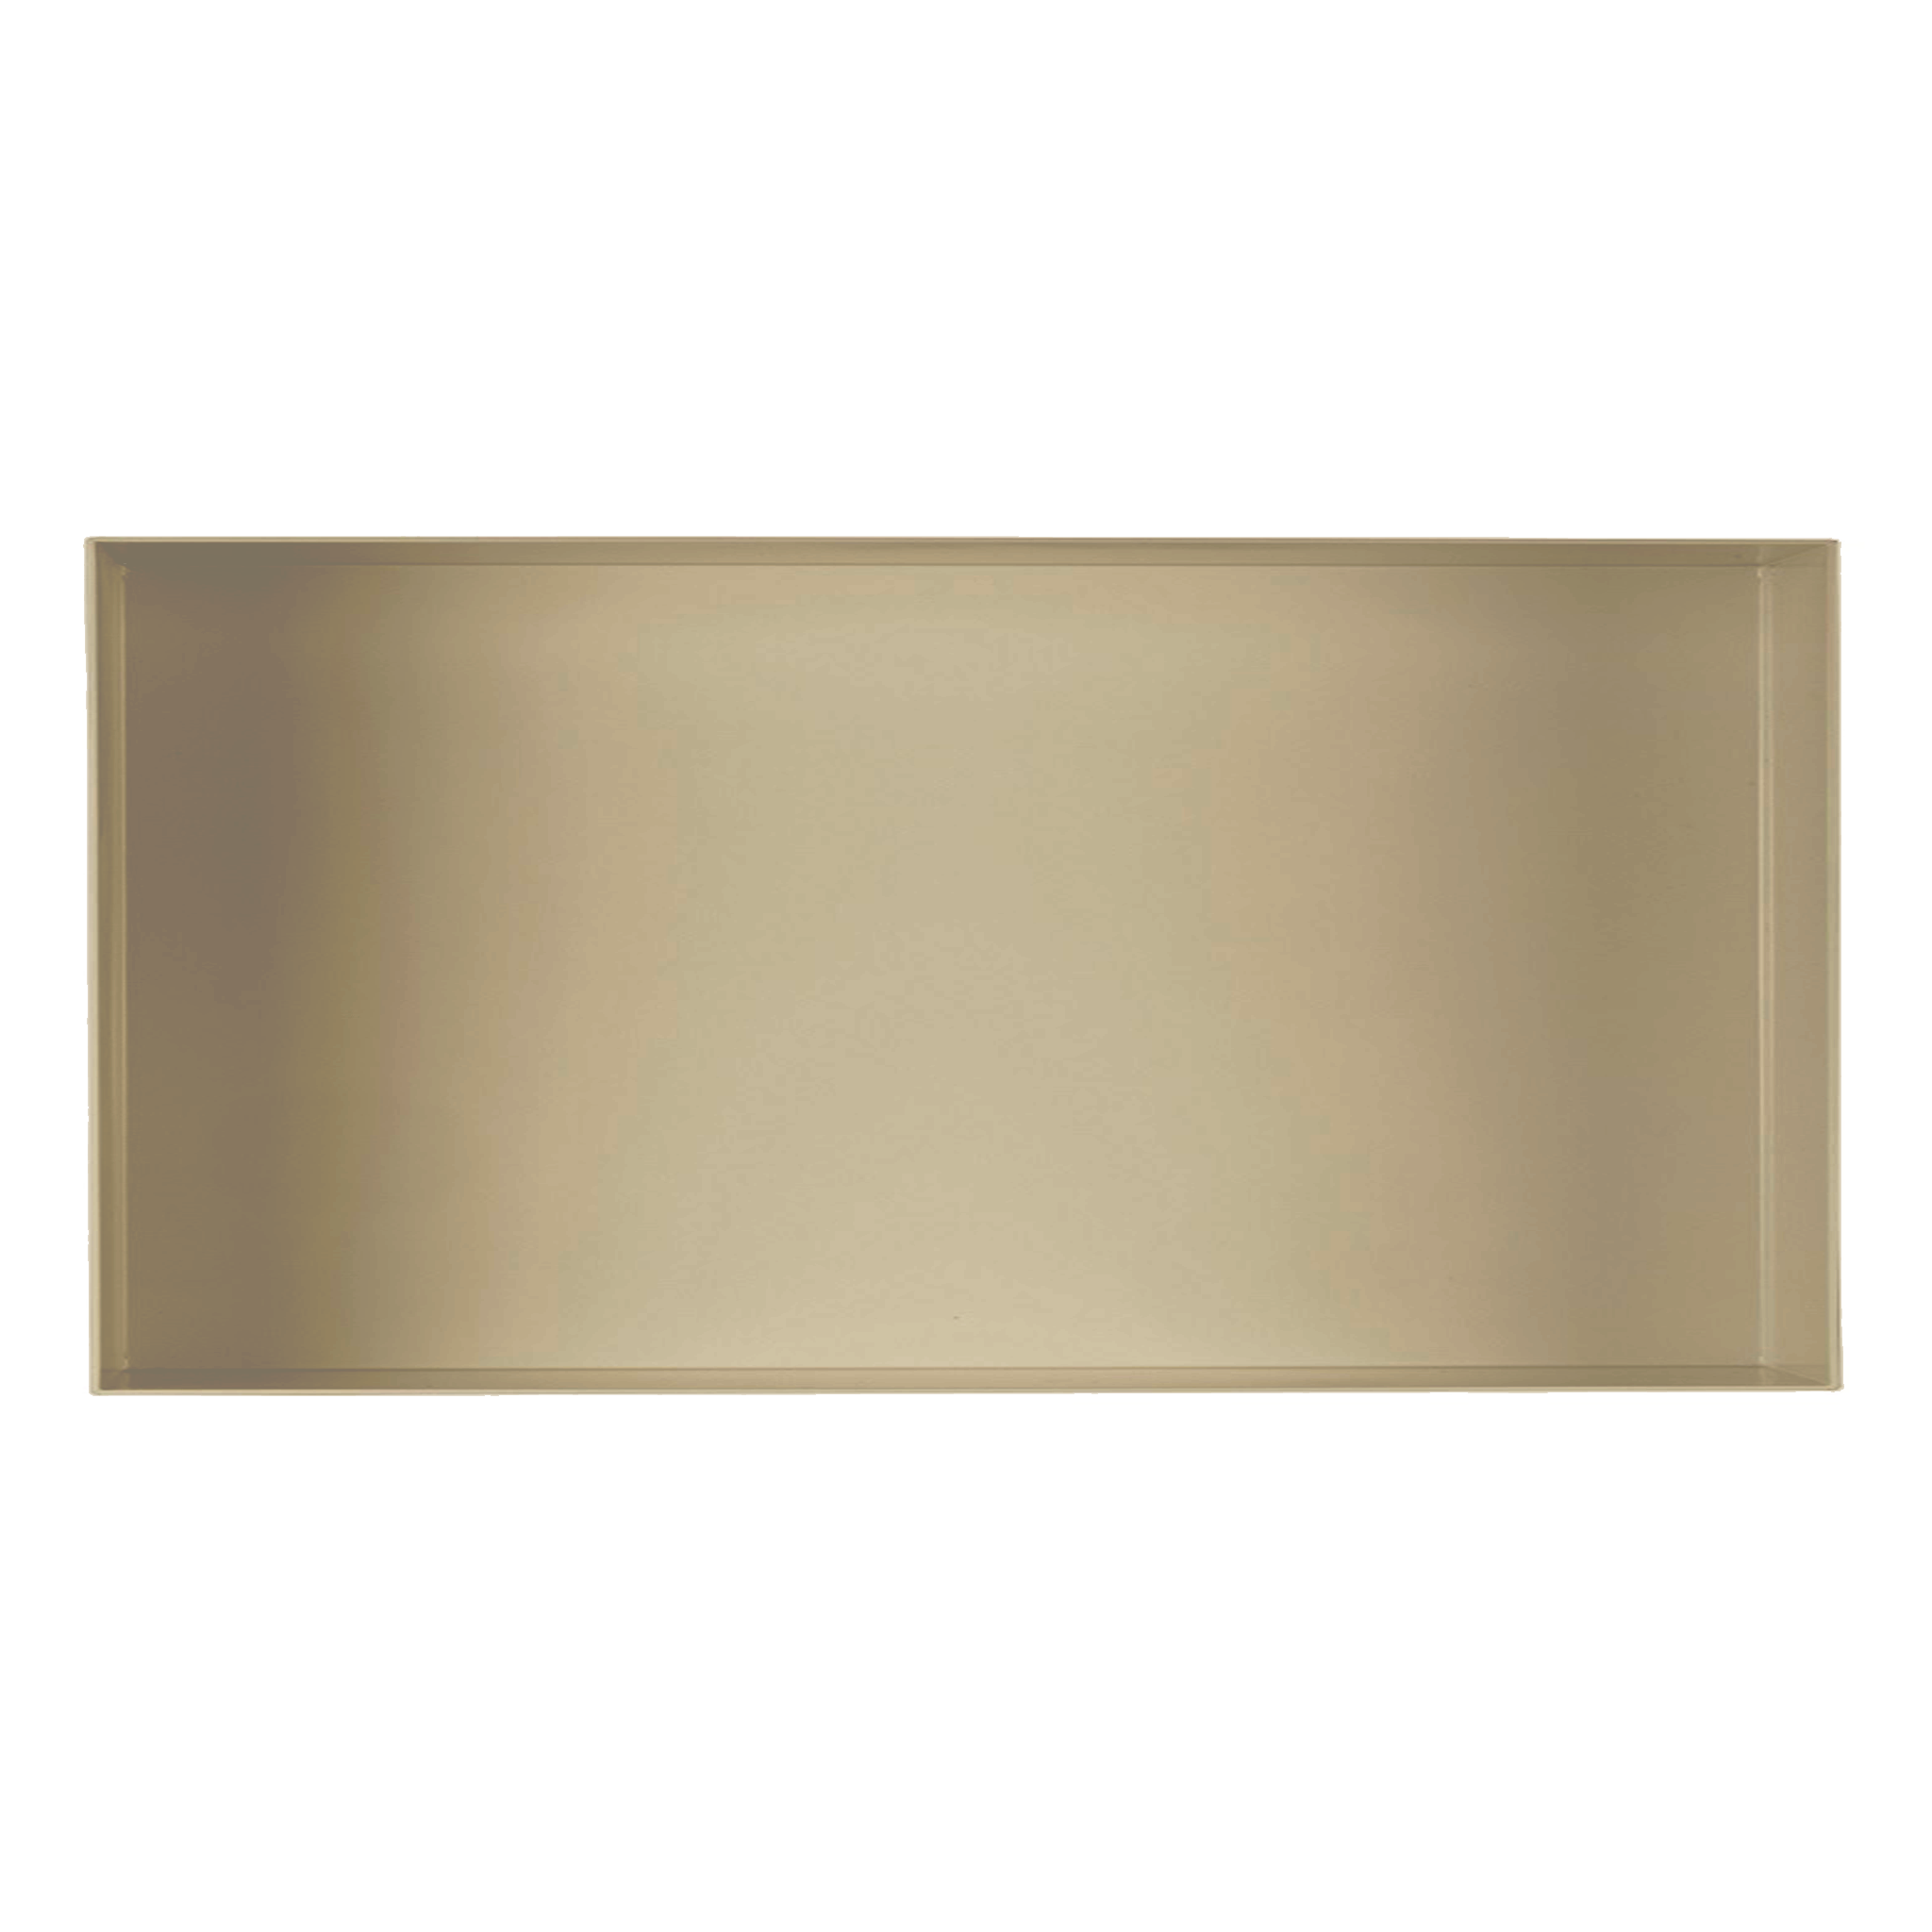 Valli Home – V-Box, Nicchia portaoggetti in Metallo smaltato color Beige KK90, Misura 30X60 P. 10 cm – V-BOX.MLLO.30X60.90